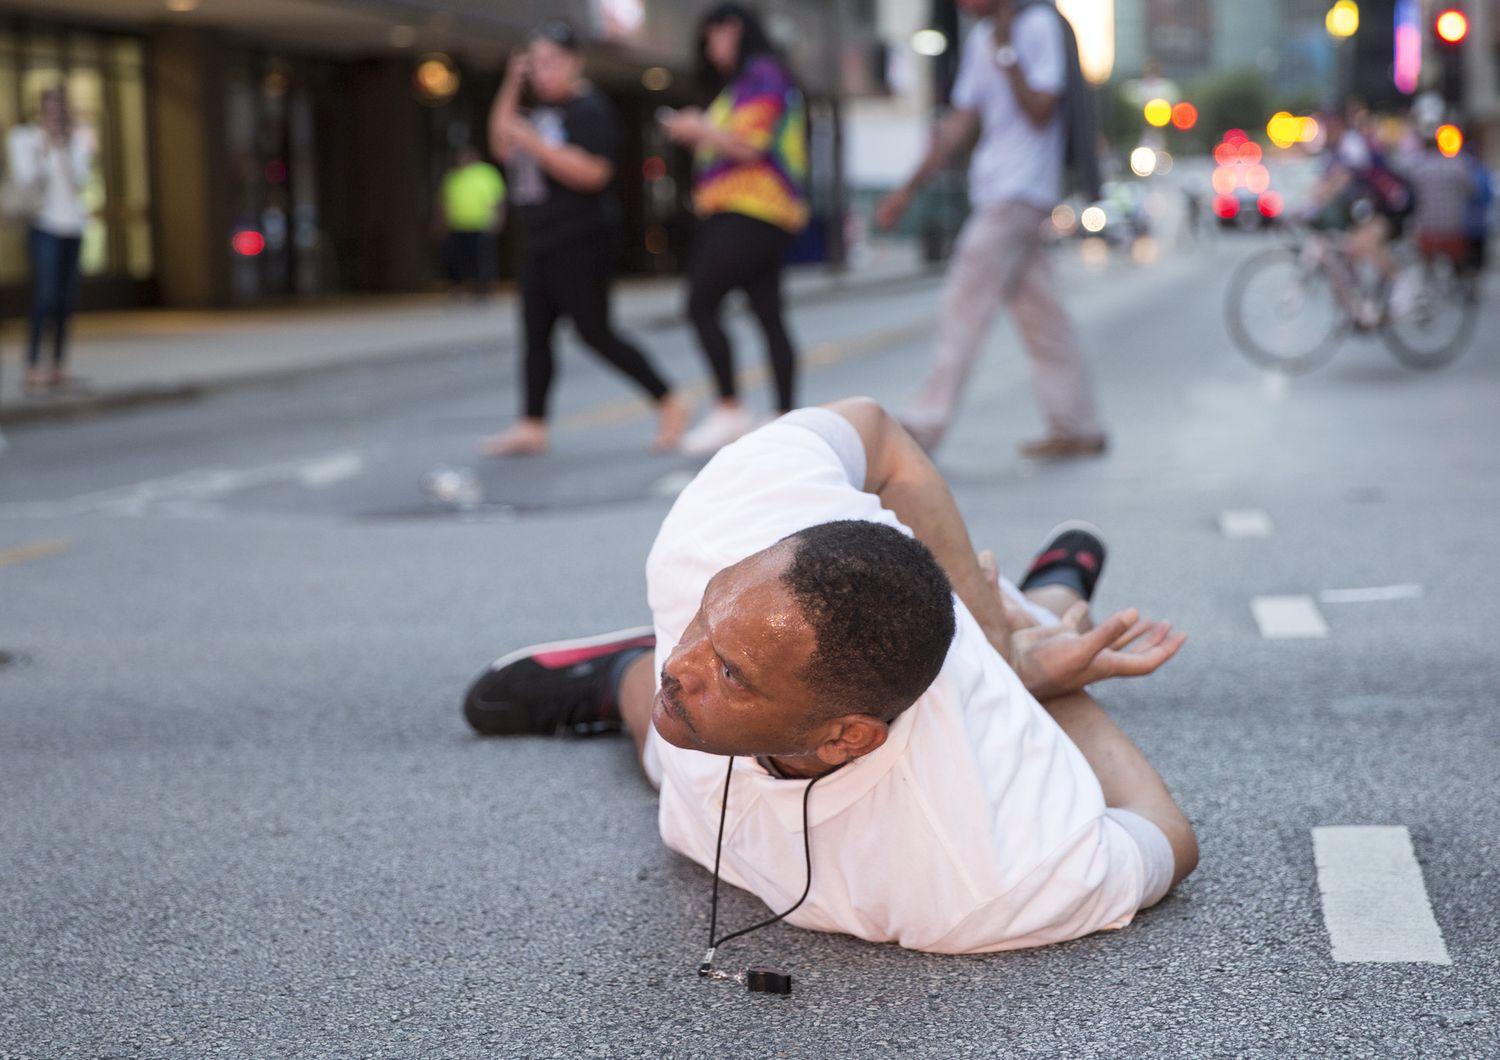 &nbsp;Un uomo si getta a terra dopo urlando &quot;Non mi sparate&quot; durante la manifestazione contro la polizia a Dallas, Texas (Afp)